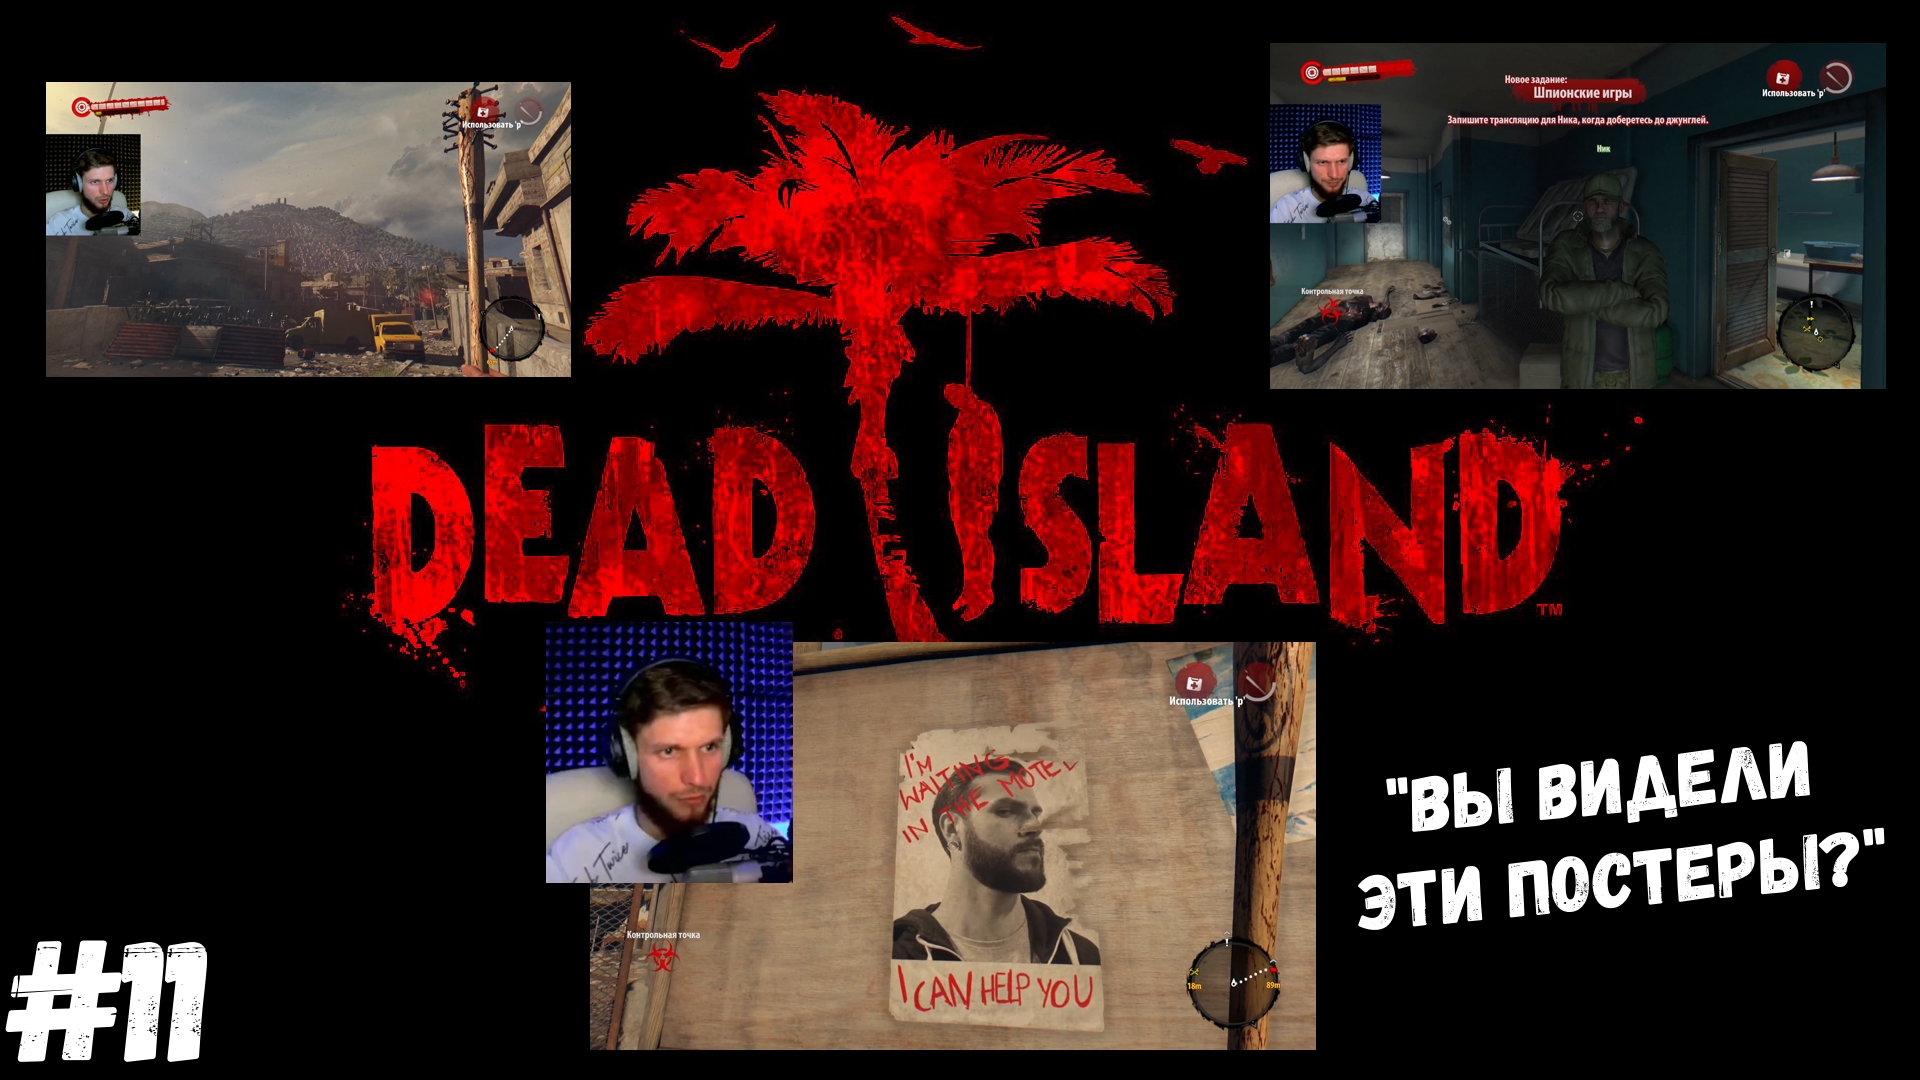 #11. Dead island Definitive Edition. "ВЫ ВИДЕЛИ ЭТИ ПОСТЕРЫ?"